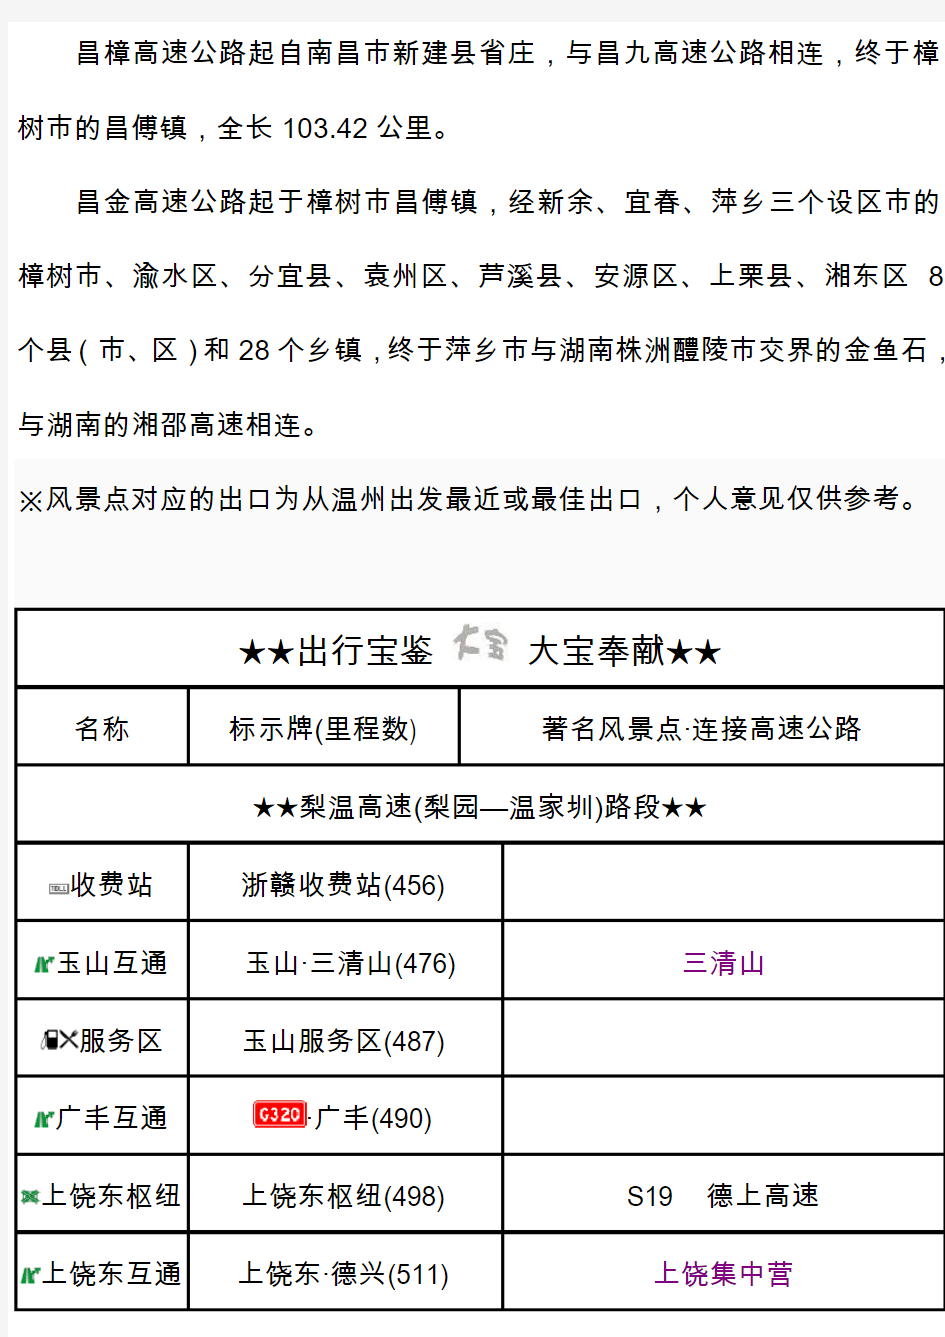 G60沪昆高速(江西段)出入口、服务区、里程数及风景区